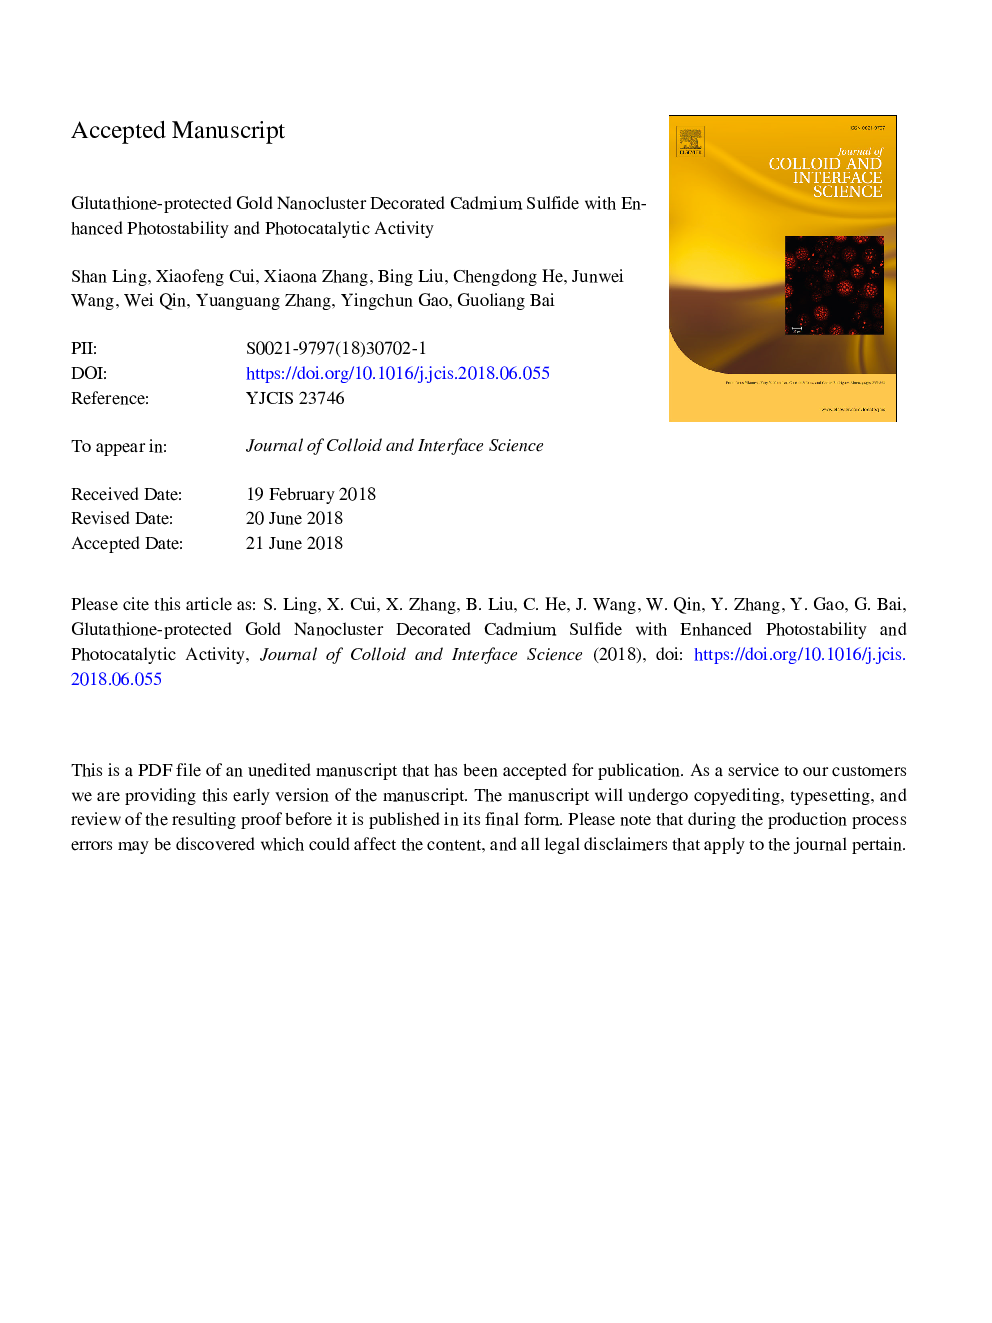 نانوکلستروست طلای محافظت شده با گلوتاتیون سولفید کادمیوم تزئین شده با افزایش قابلیت فتوکپی و فعالیت فتوکاتالیتی 